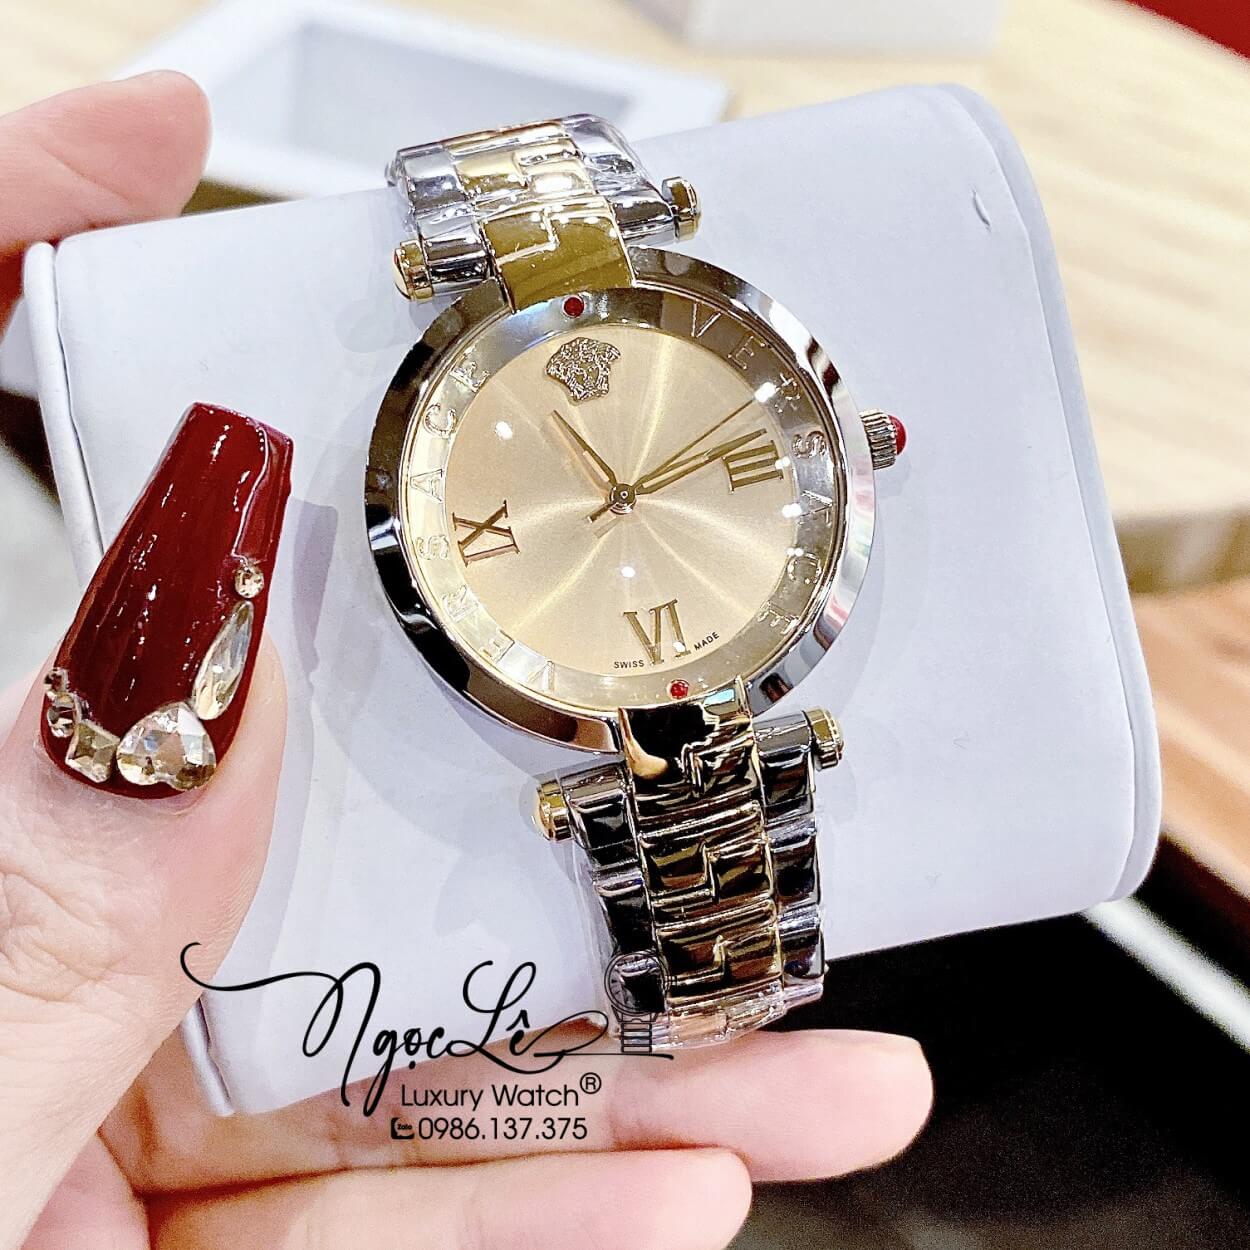 Đồng Hồ Nữ Versace Revive Dây Kim Loại Demi Vàng Mặt Vàng Size 35mm Máy Thụy Sỹ